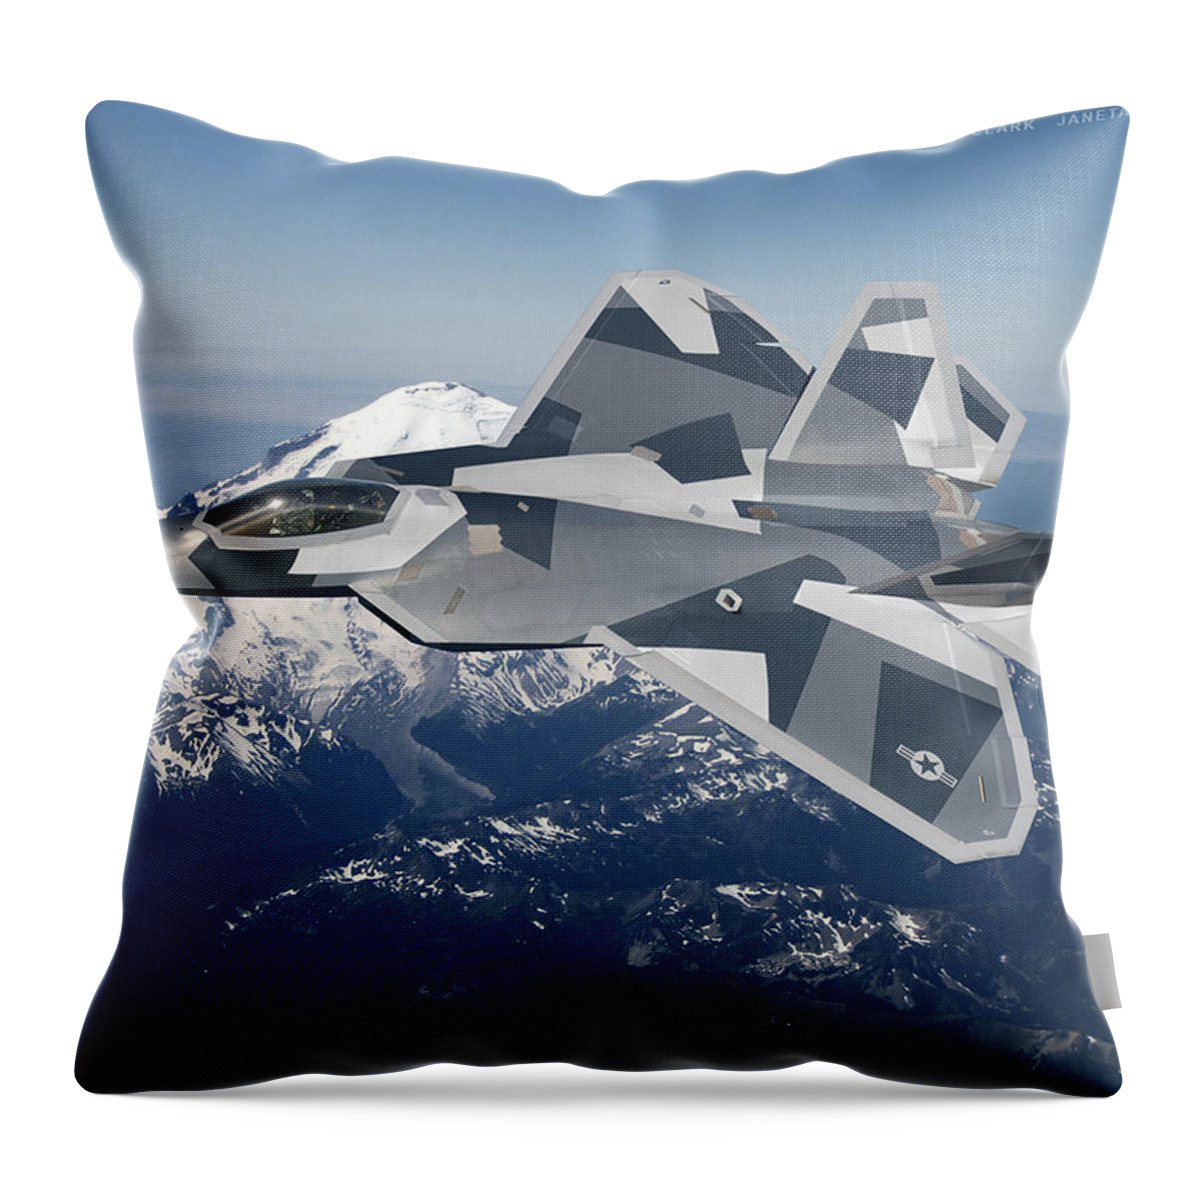 Raptor Throw Pillow featuring the digital art Splinter Raptor by Custom Aviation Art